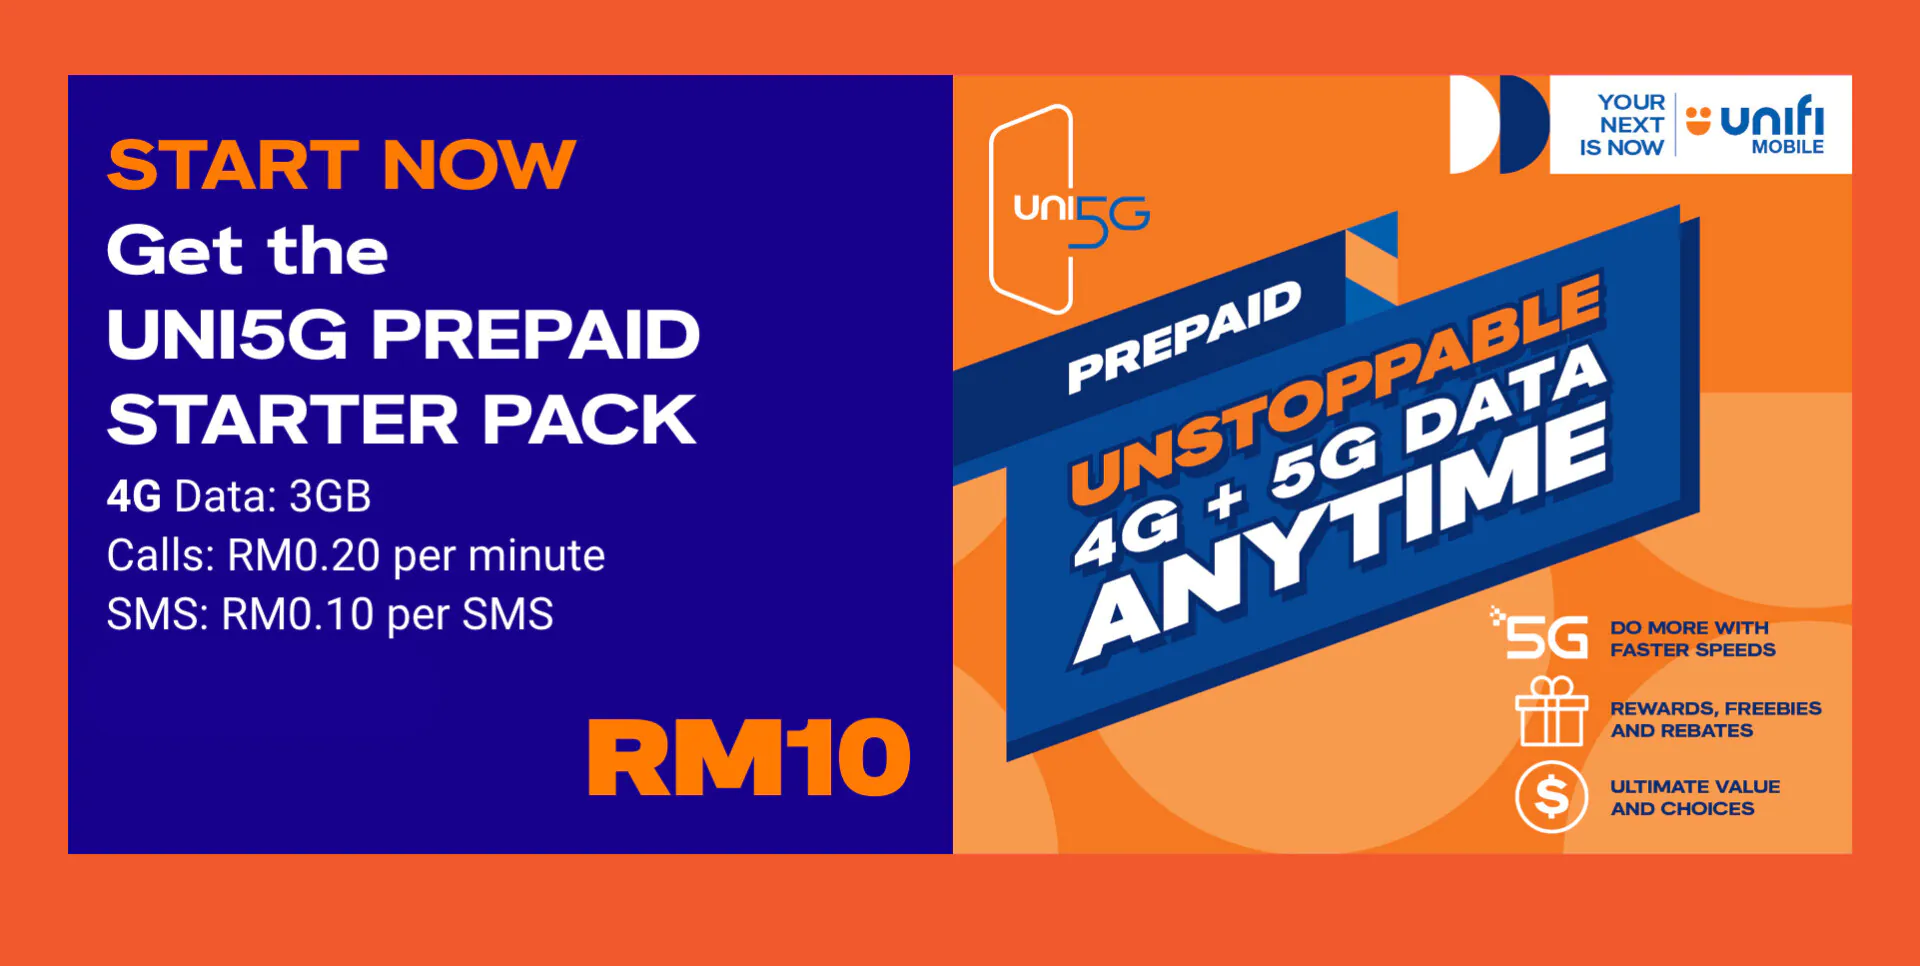 unifi mobile prepaid uni5g bebas starter pack